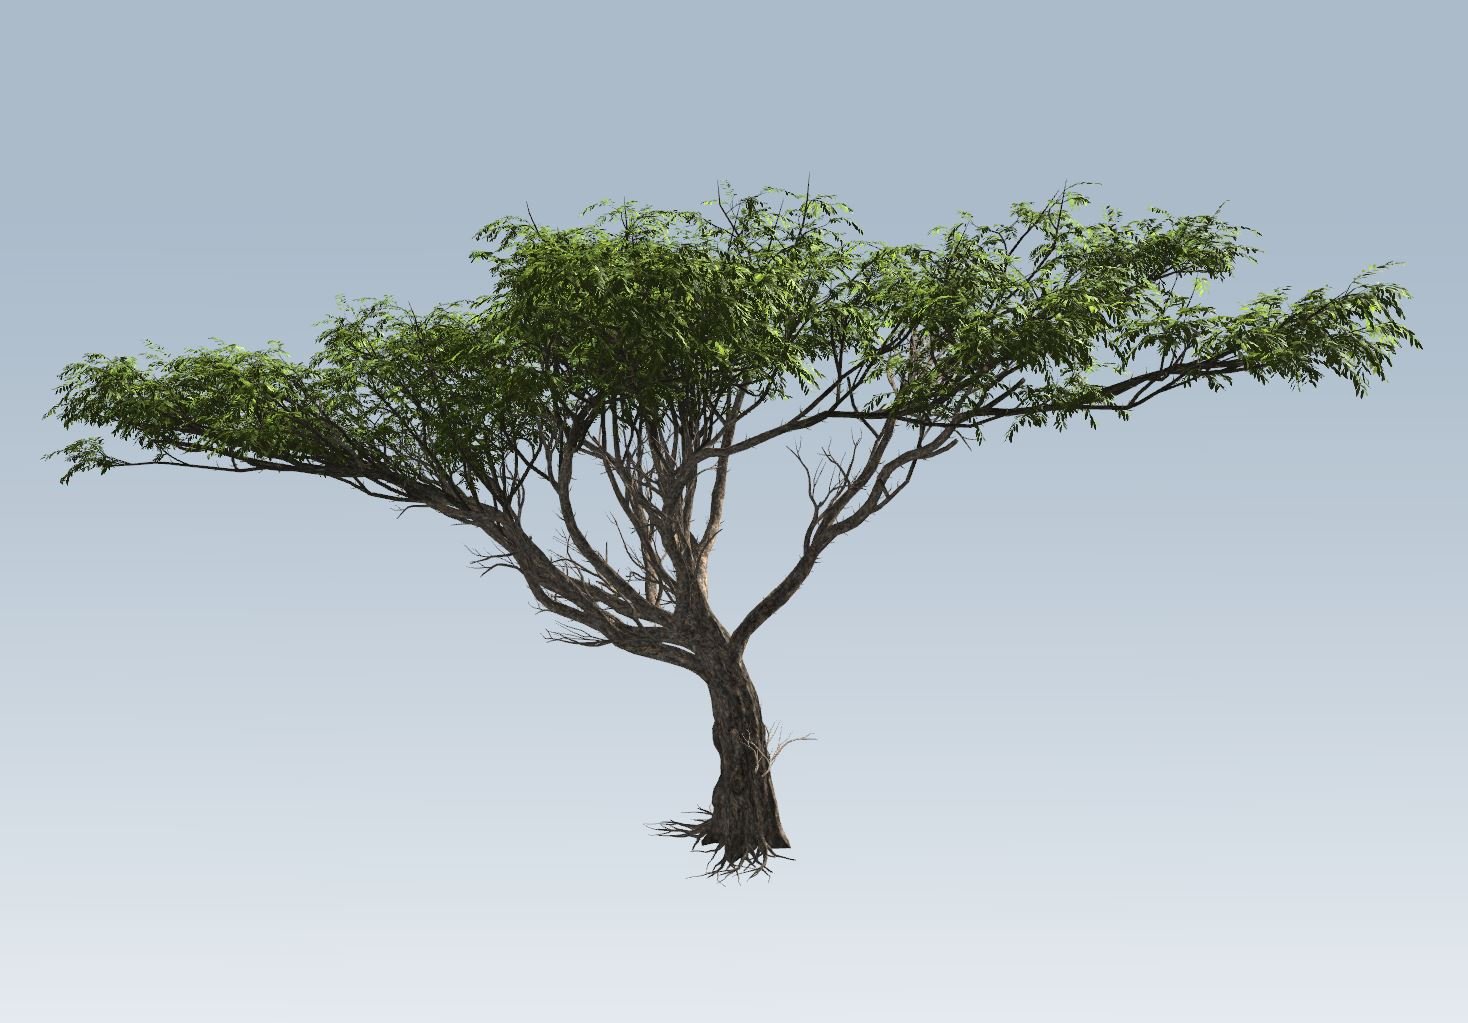 Acacia Tree